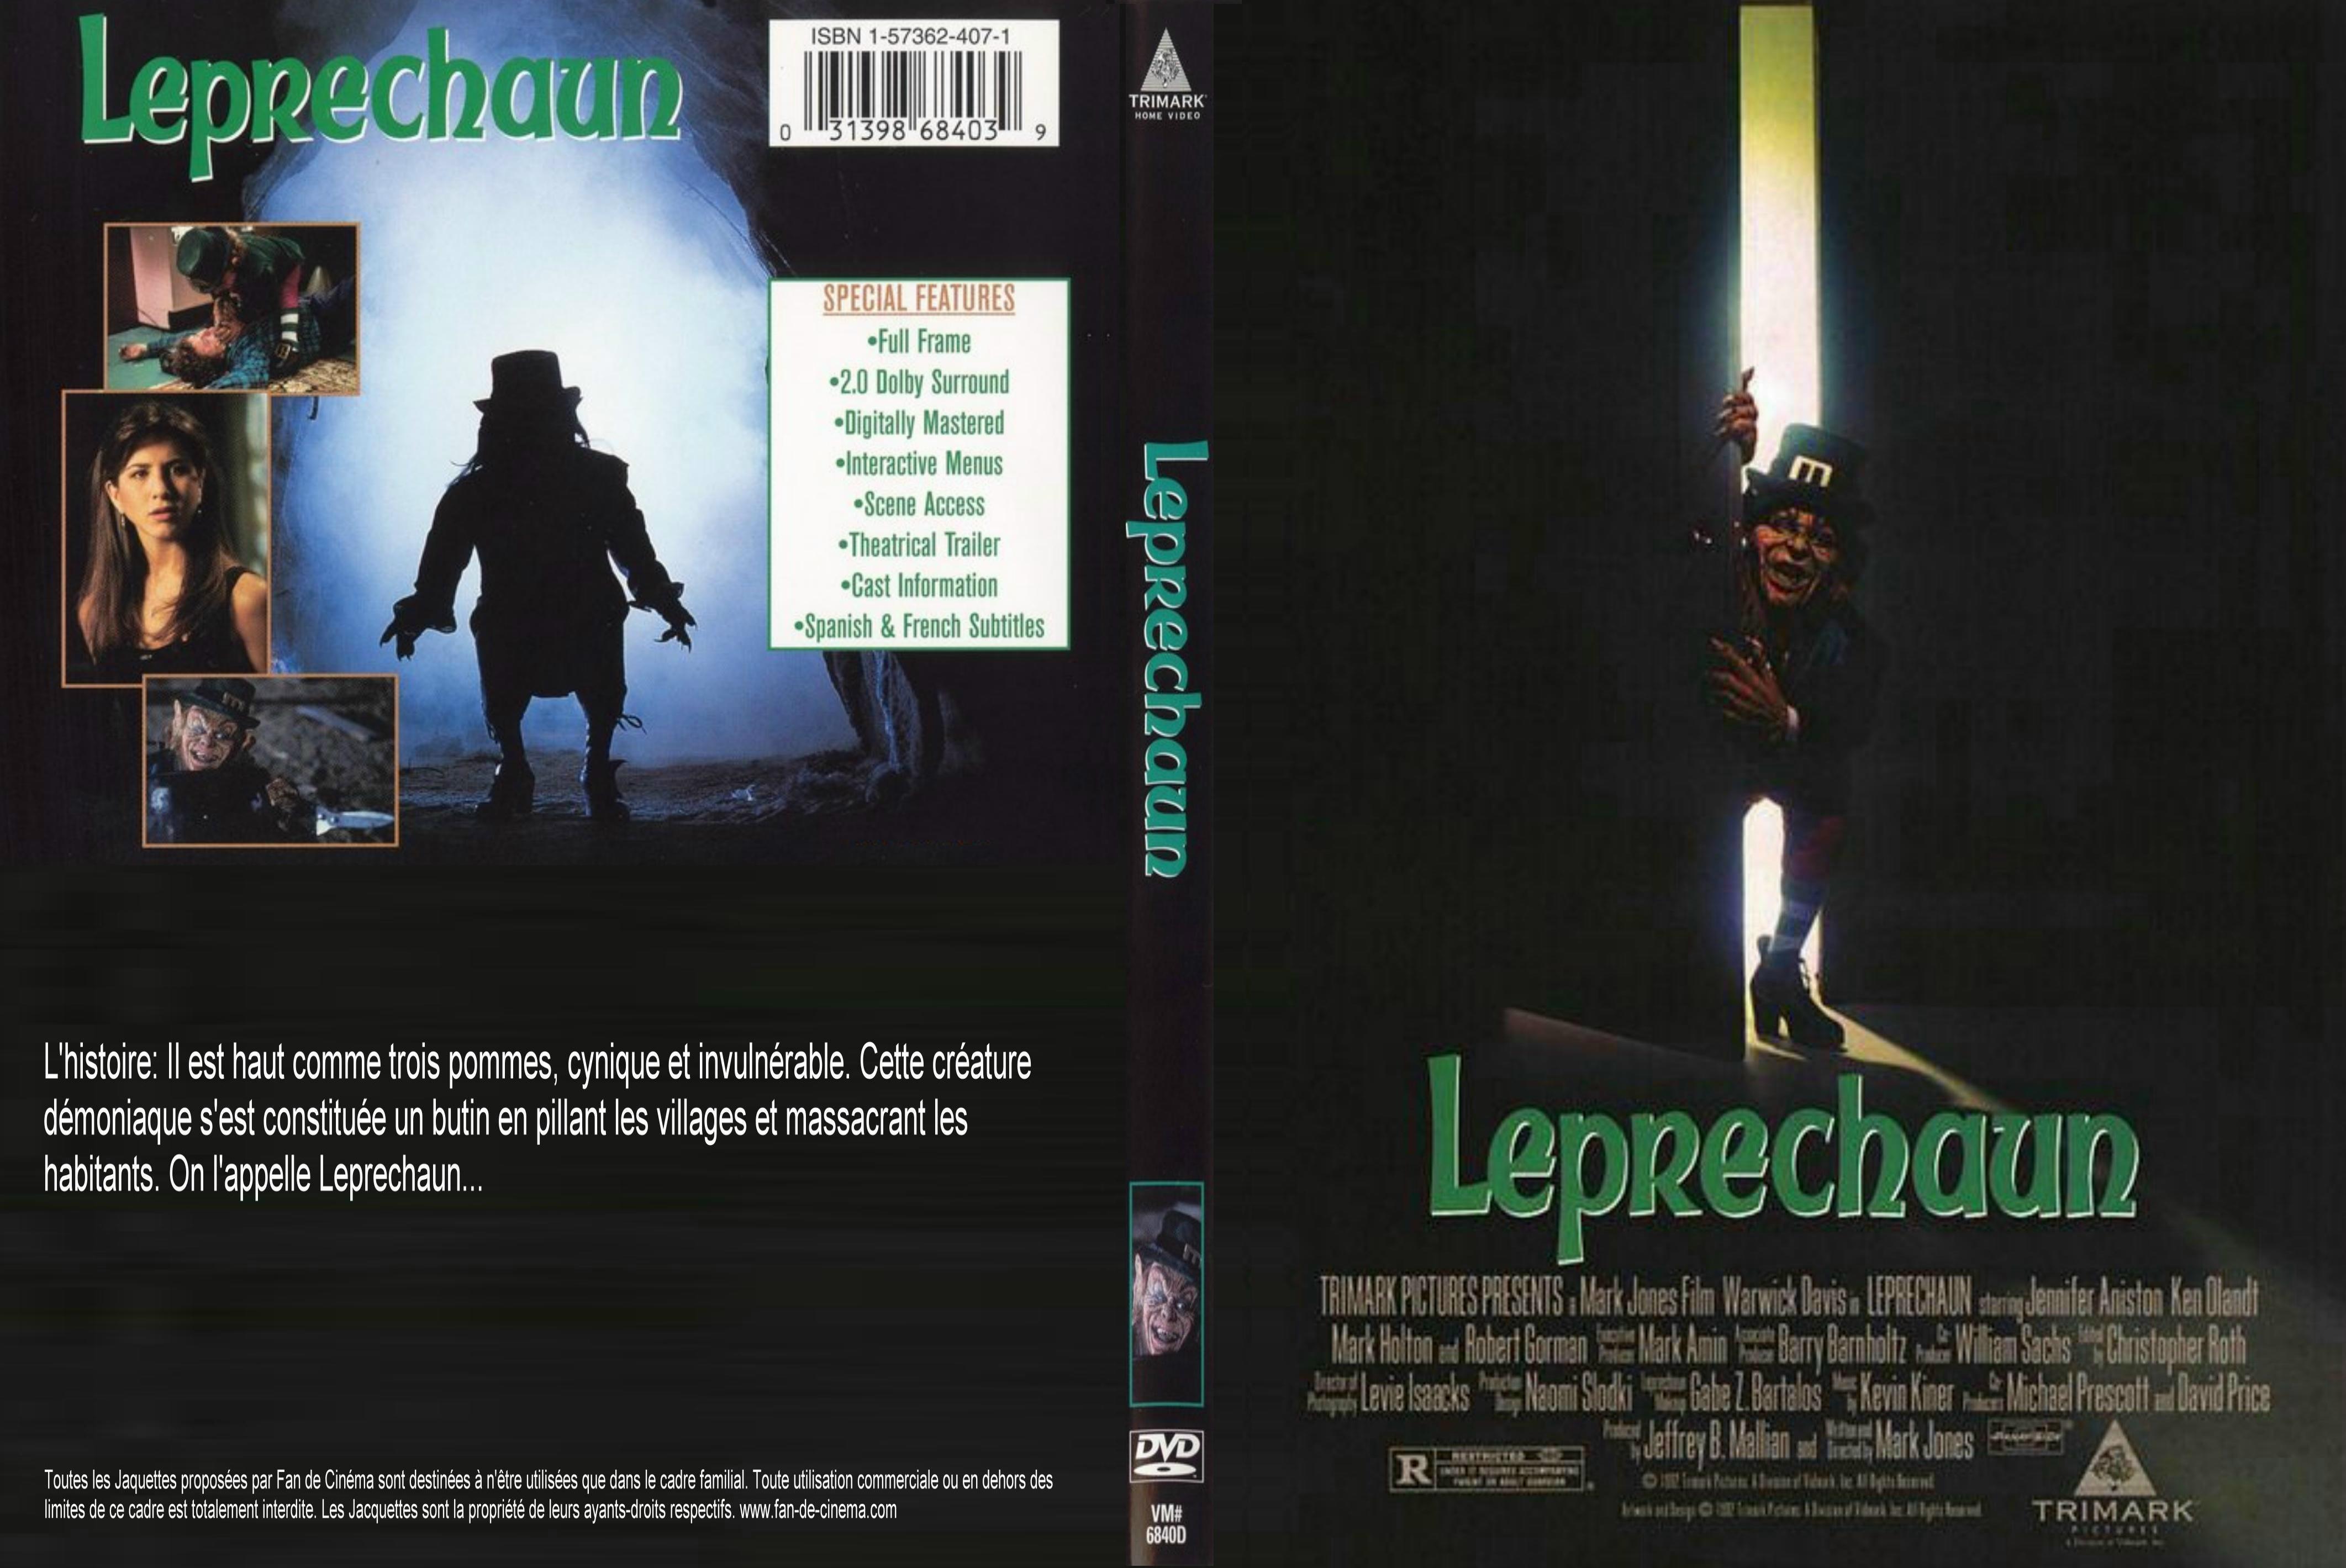 Jaquette DVD Leprechaun custom - SLIM